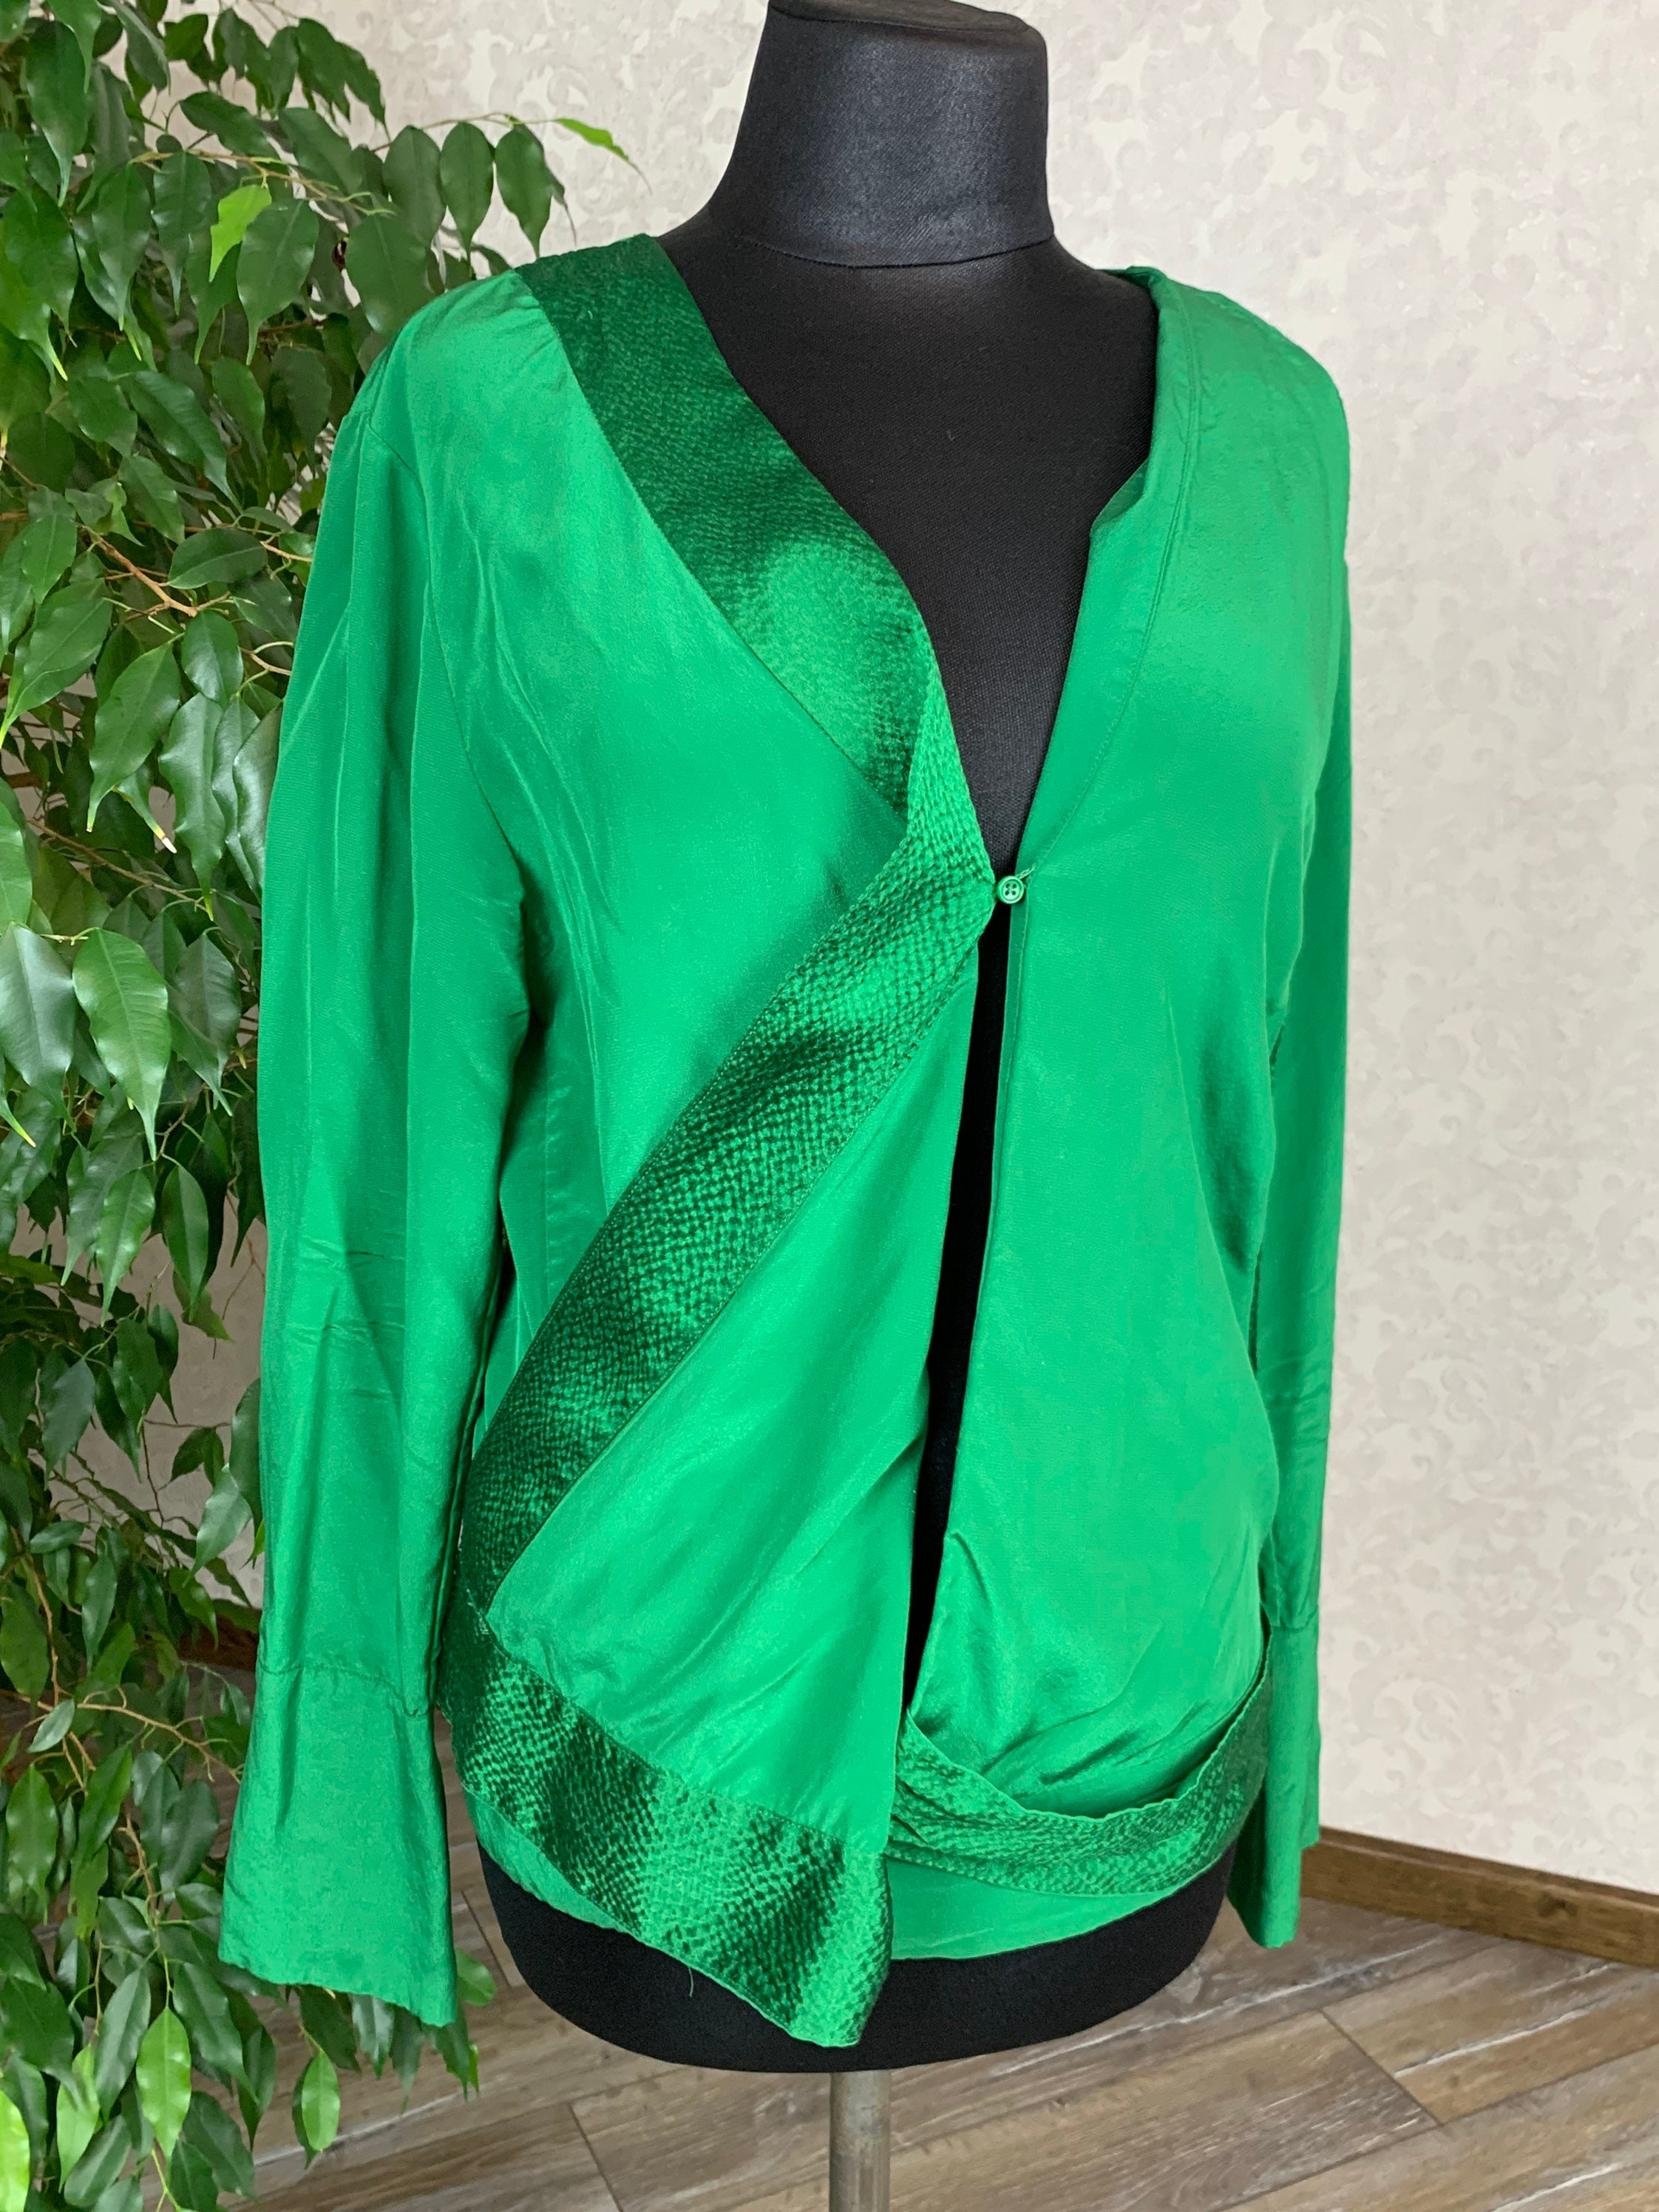 Diane Von Furstenberg Silk Blouse Top Shirt Green Auth P Size M/L